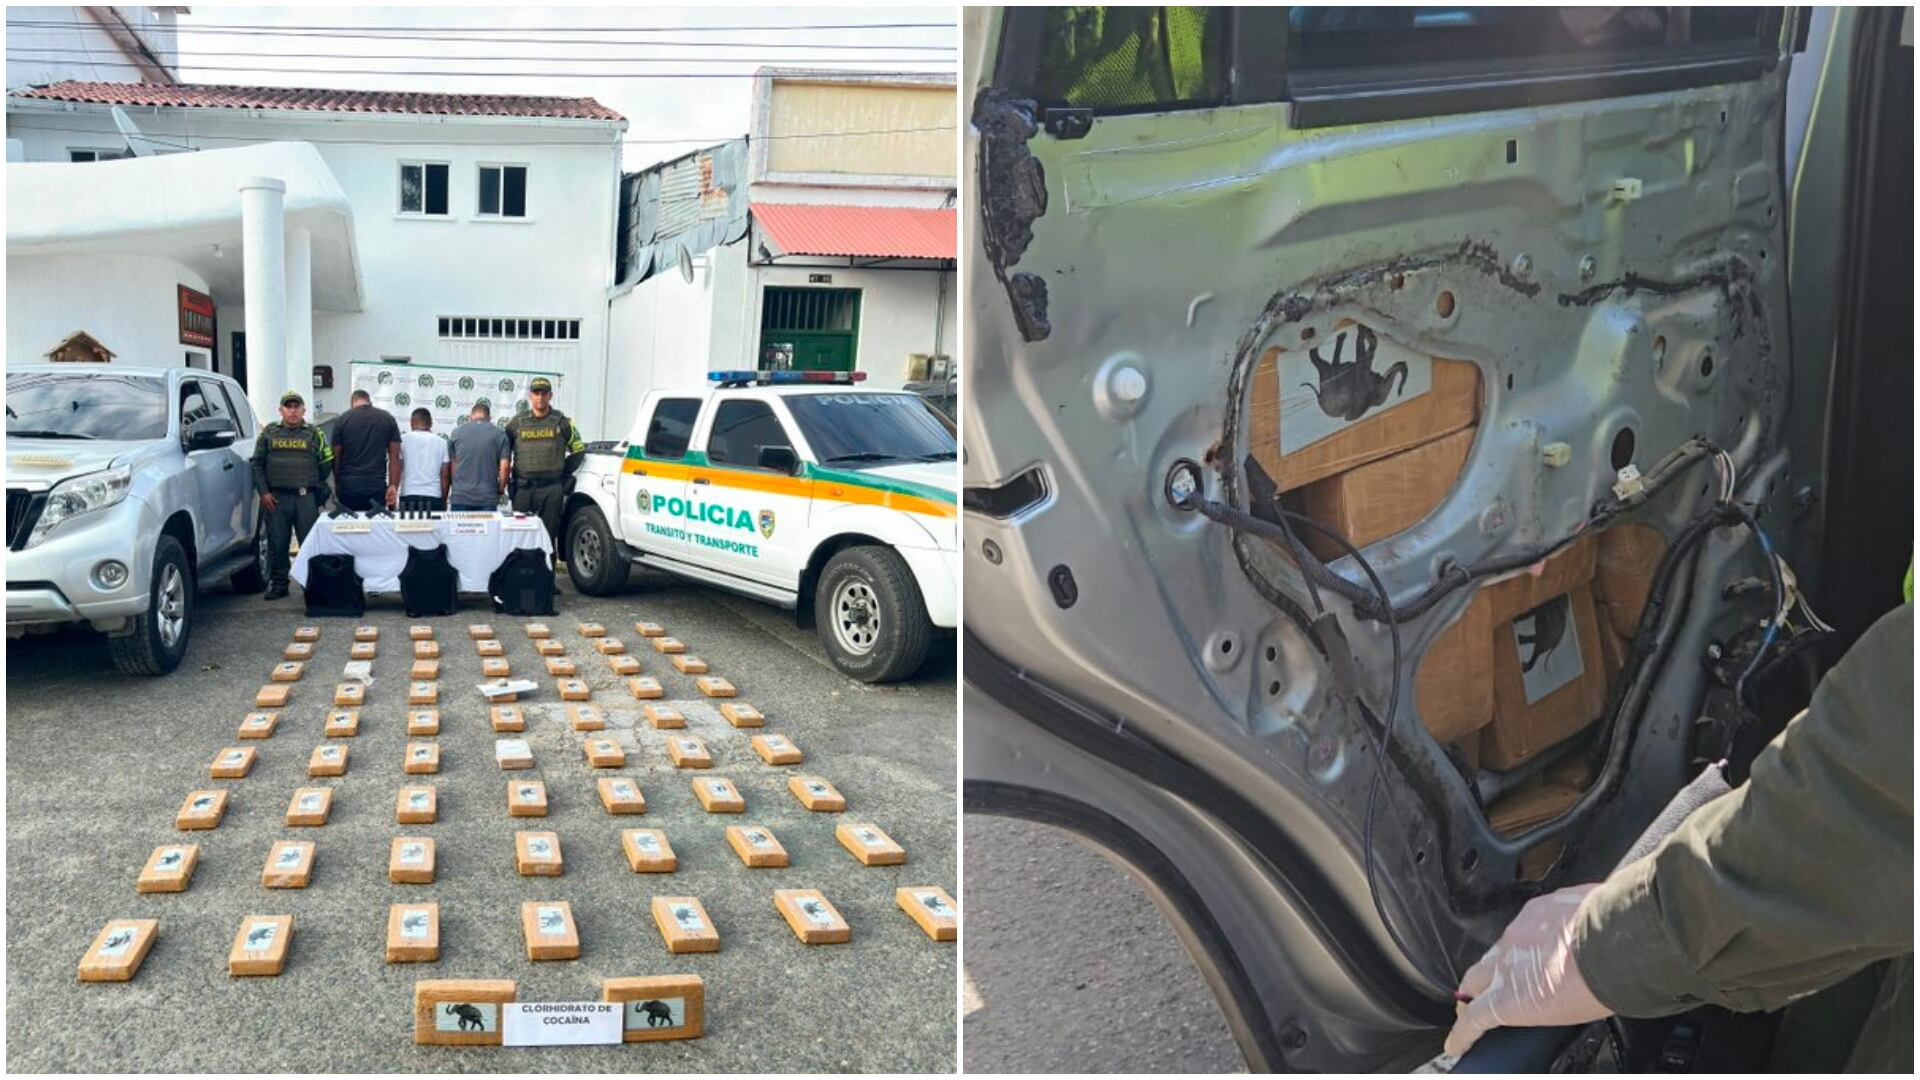 Incautan 65 kilos de cocaína en camioneta de la UNP: Últimas noticias de seguridad en Colombia (imagen tomada de X de la Unidad de Protección Nacional donde muestran la camioneta implicada en el tráfico de droga, el cargamento incautado y a los implicados en el delito)